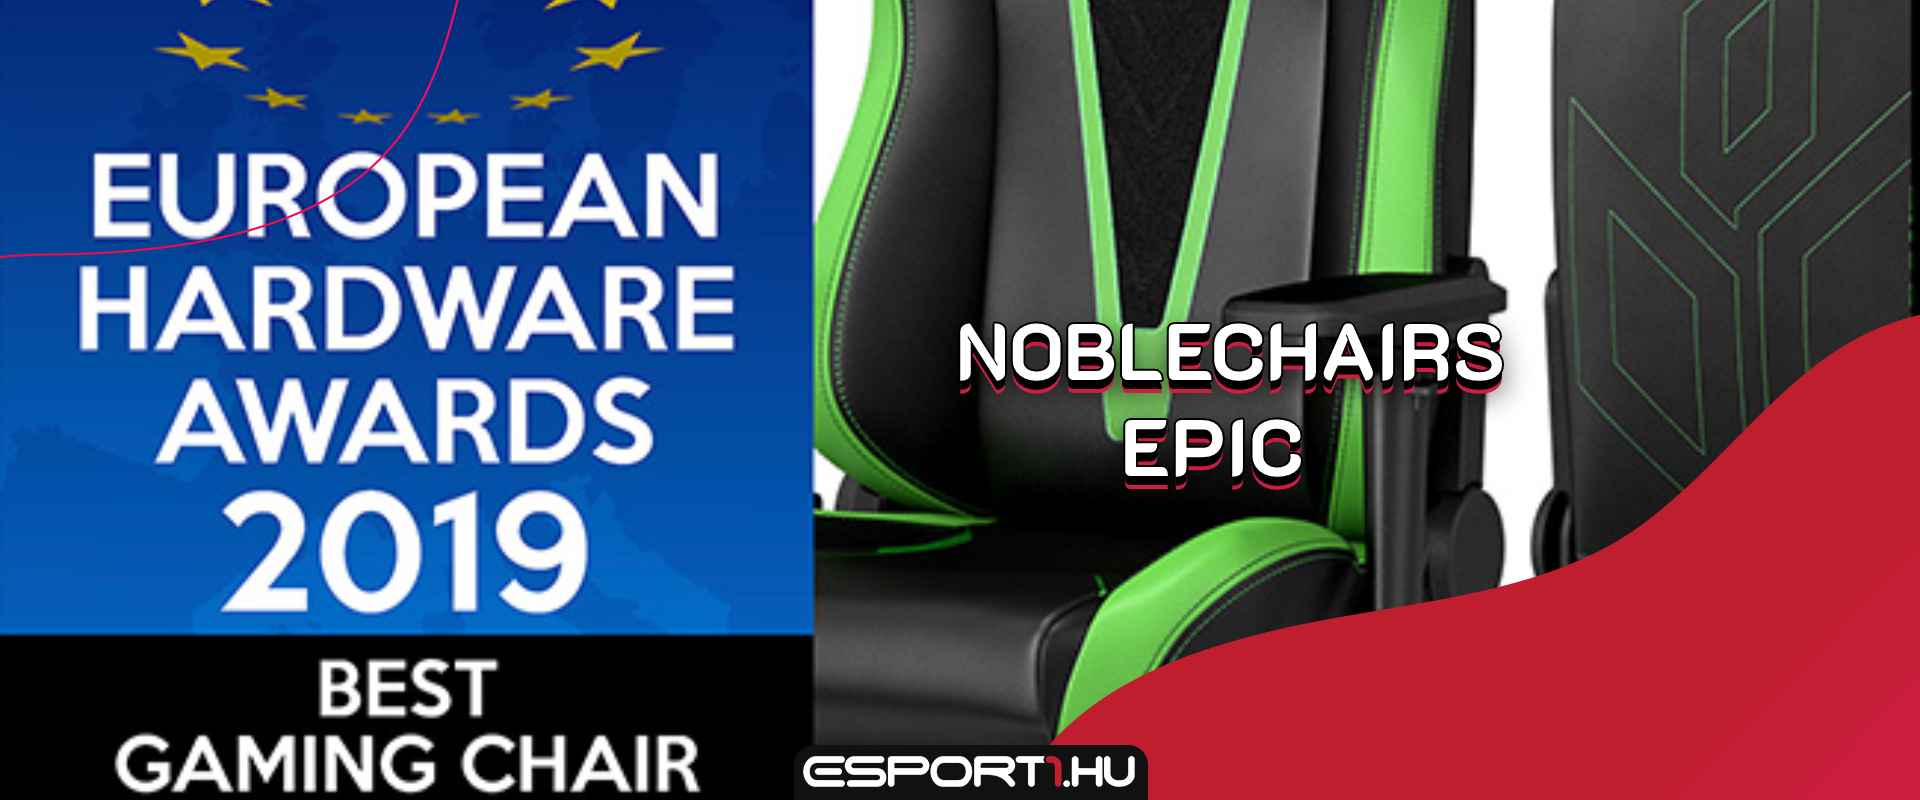 Zsinórban harmadszor is a Noblechairs gamer széke a legjobb Európában!